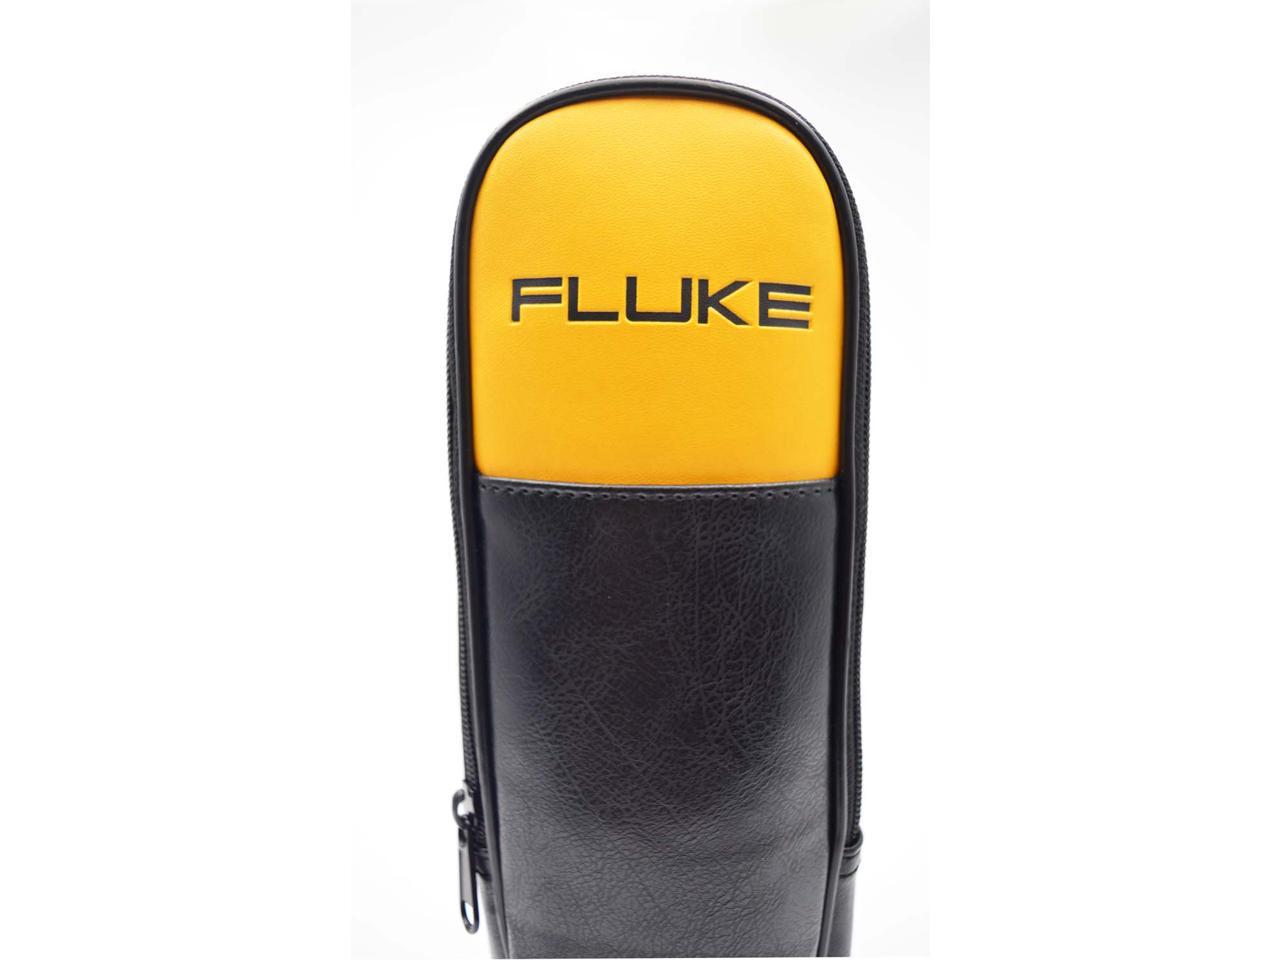 Fluke Soft Black Carrying Case 302 303 773 374 375 376 381 Clamp Meter Case 